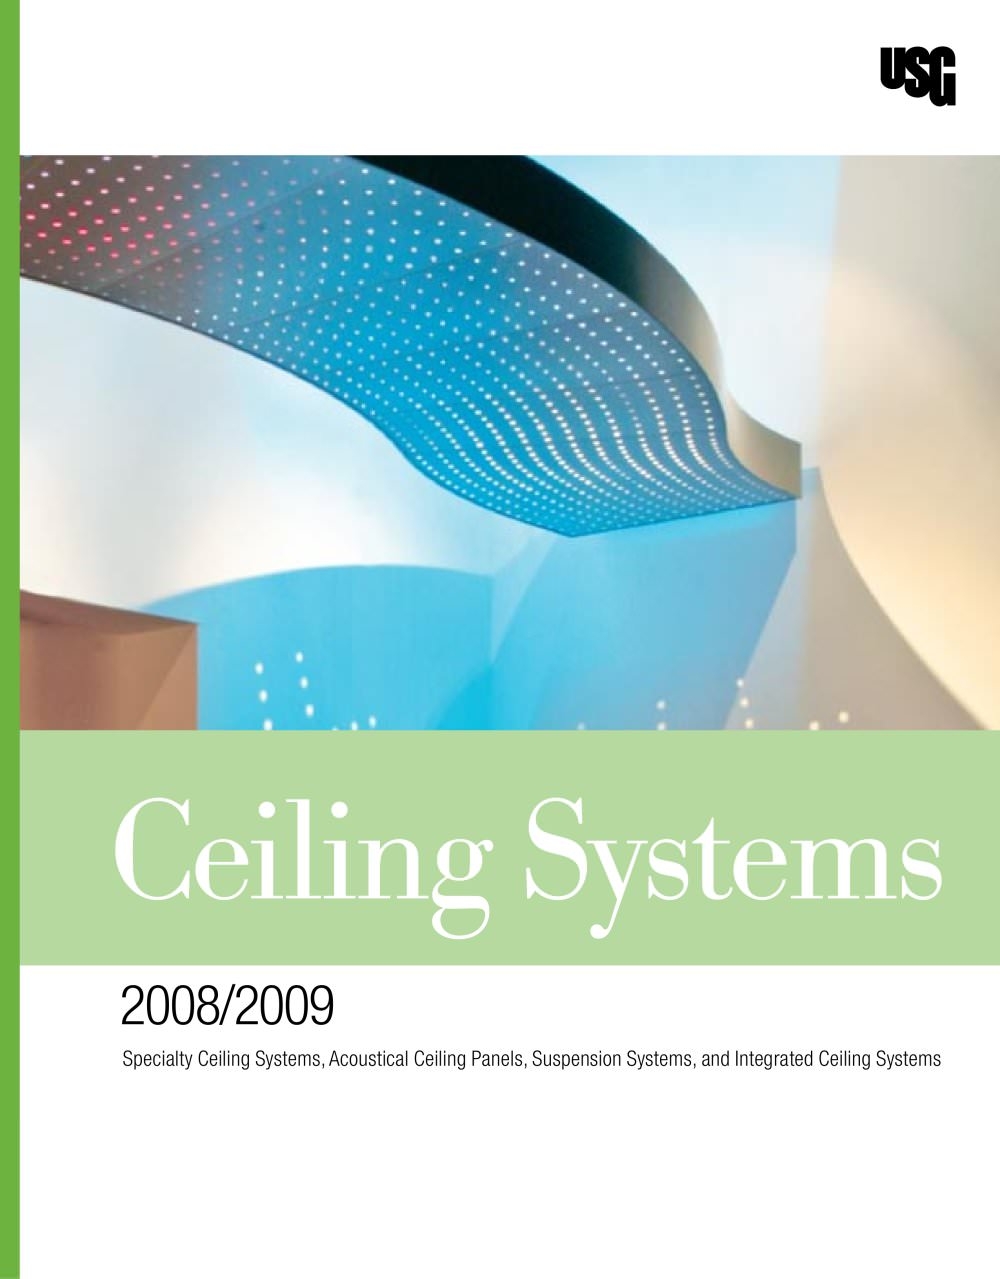 Usg Ceiling Tile Catalog Usg Ceiling Tile Catalog usg ceiling systems catalog usg pdf catalogues documentation 1000 X 1279